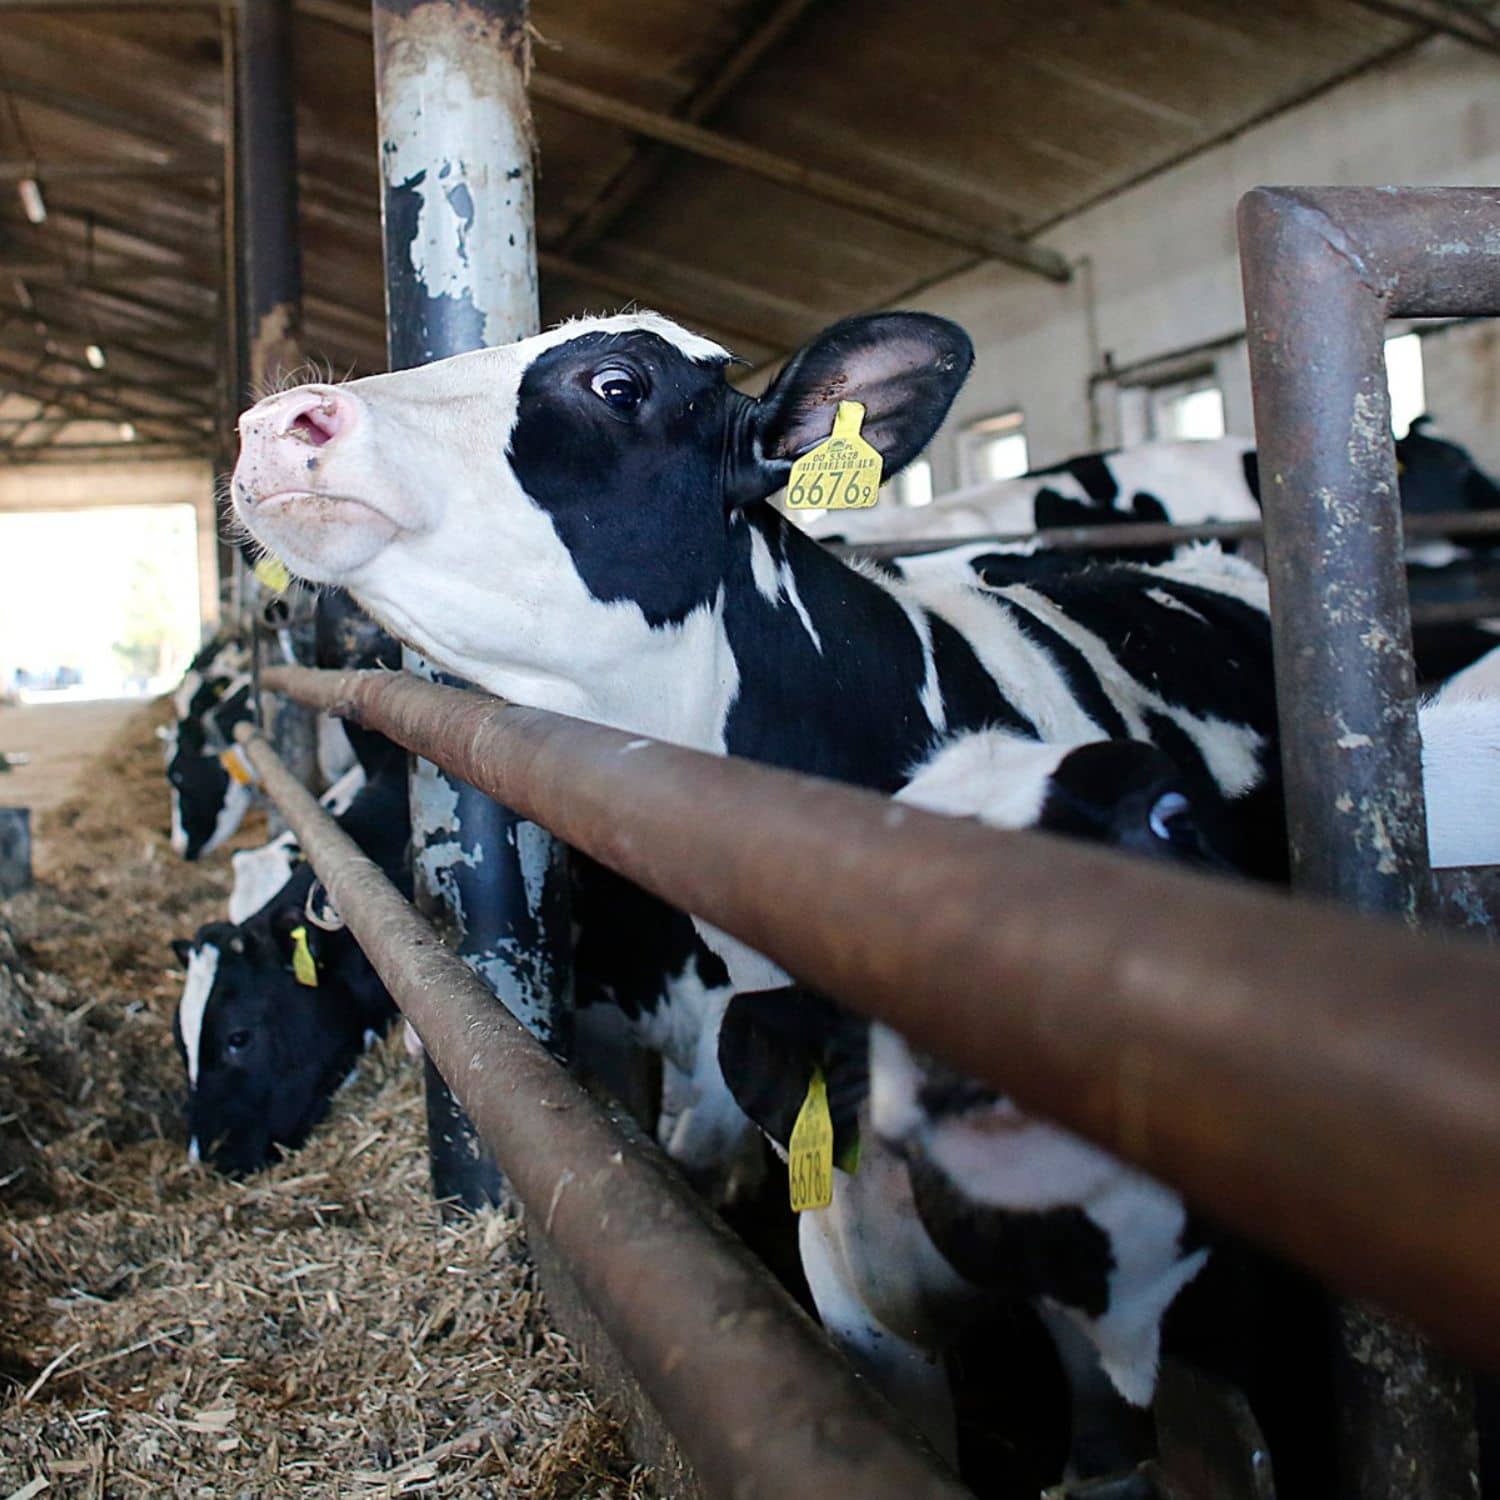 Una vaca mira a la cámara mientras apoya su cabeza sobre la barra de metal del corral del establo de una granja lechera.